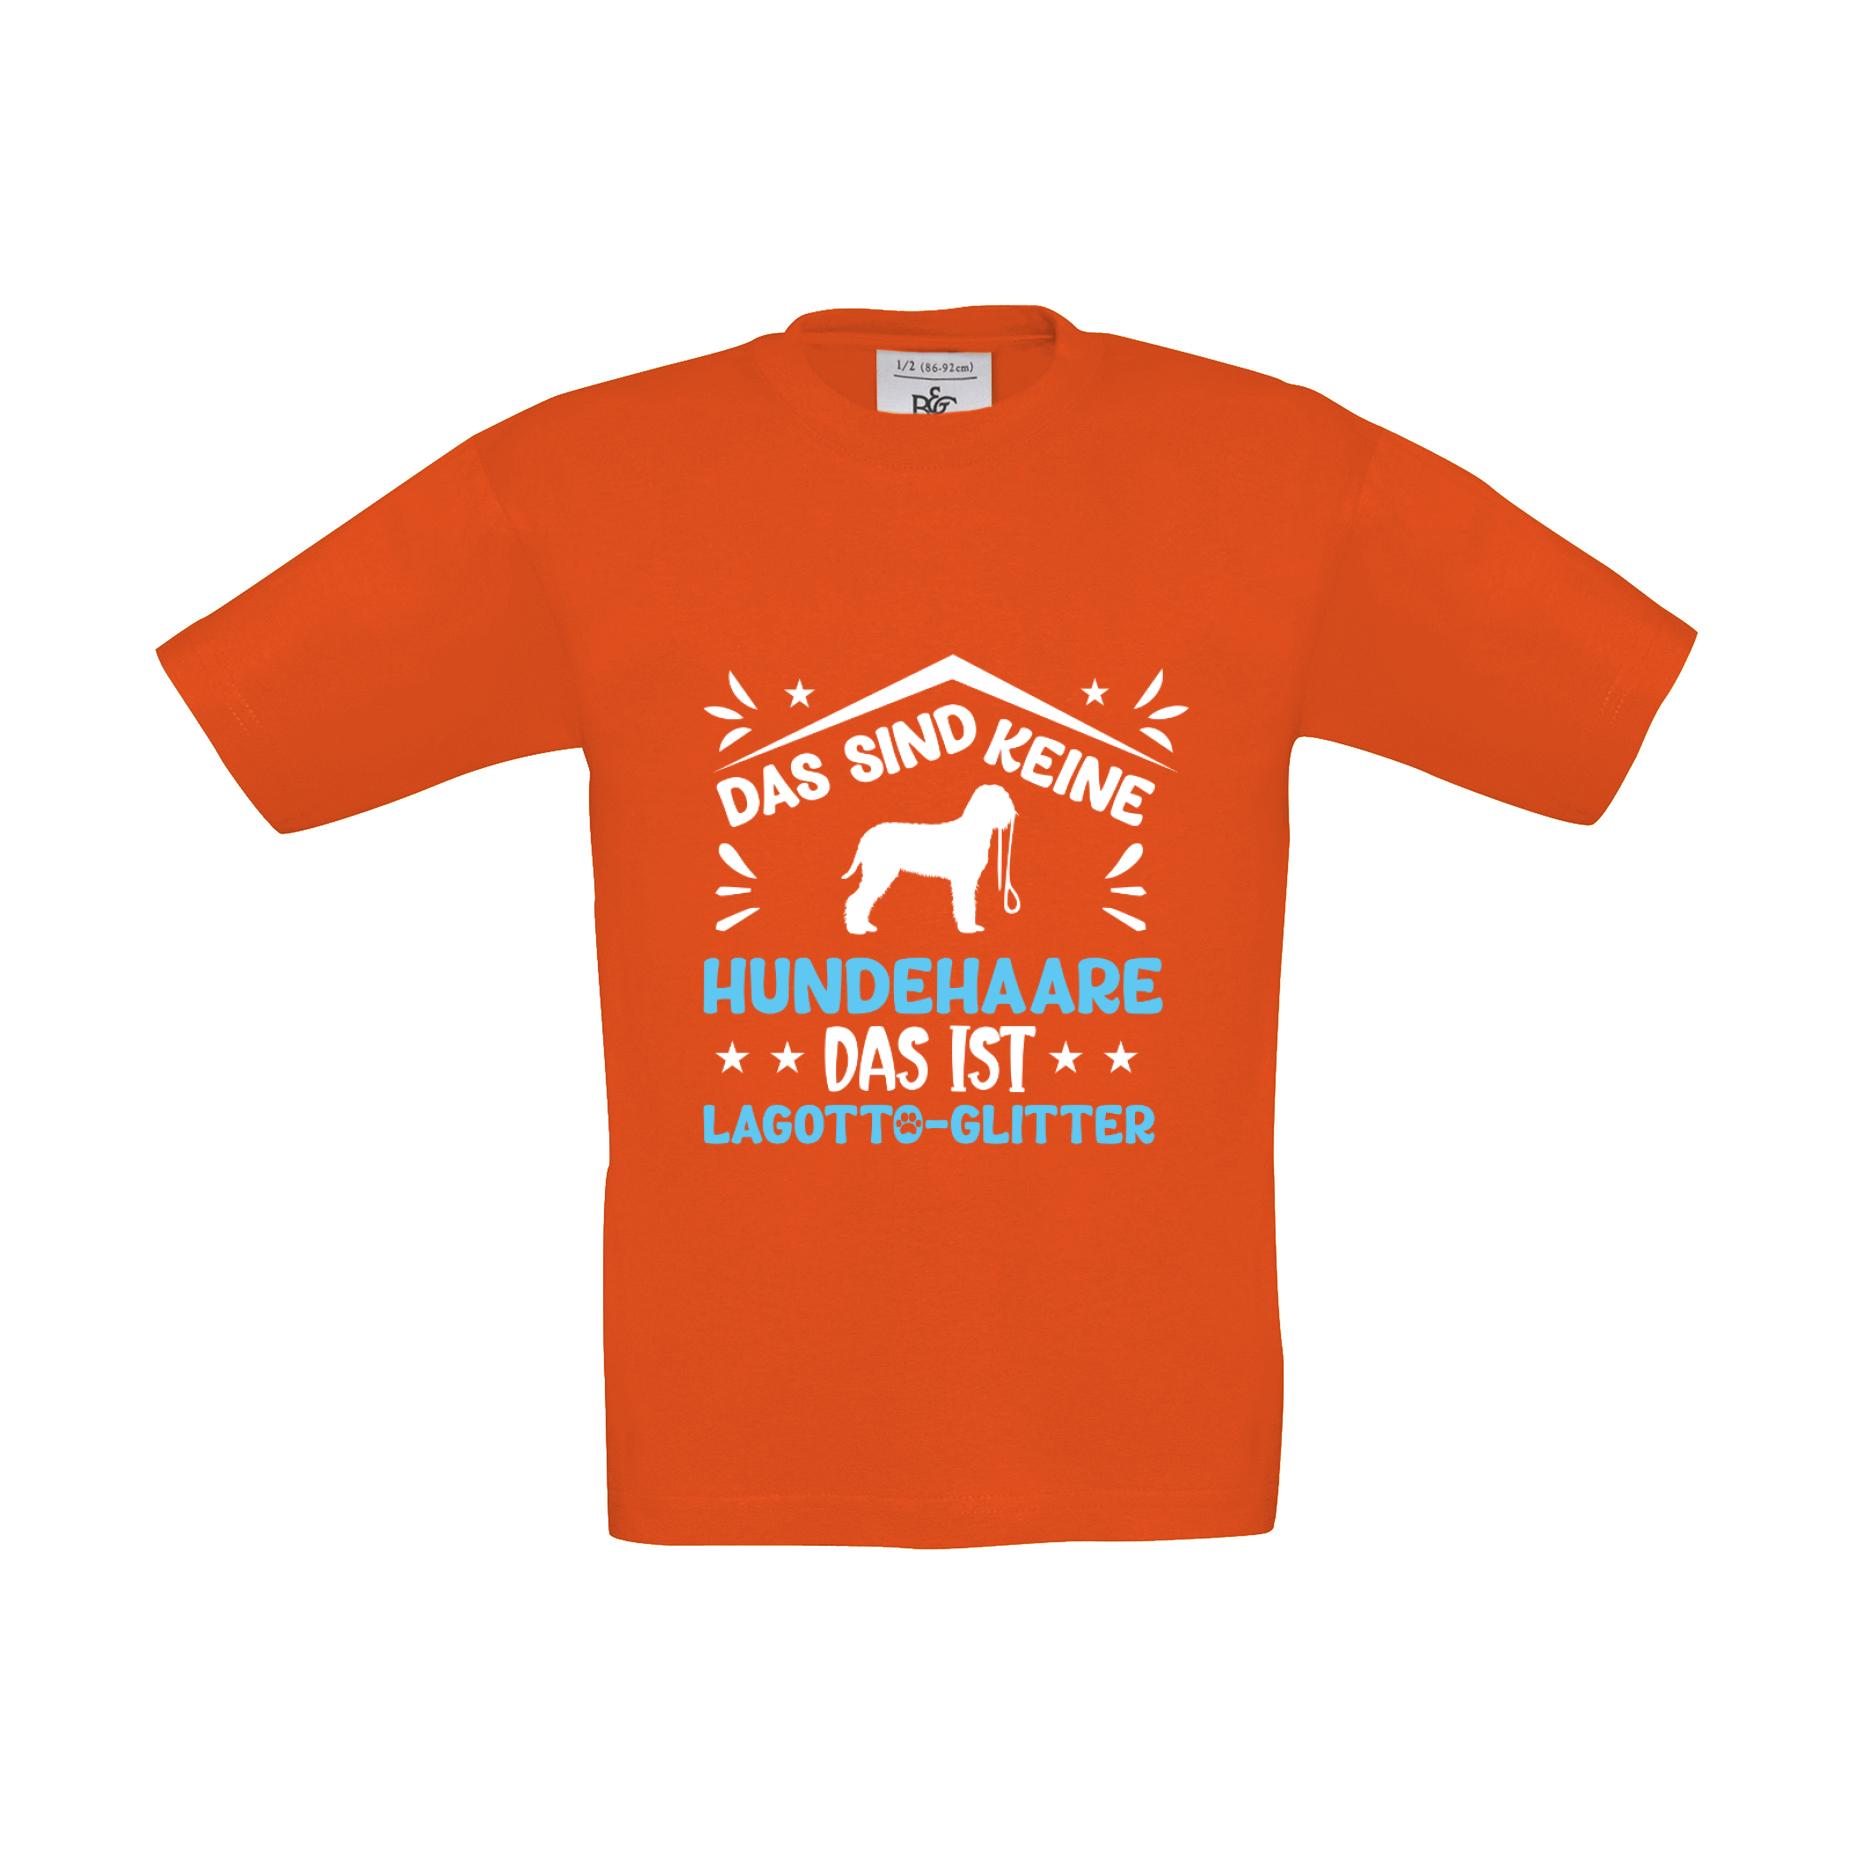 T-Shirt Kinder Hunde - Keine Hundehaare Lagotto Glitter